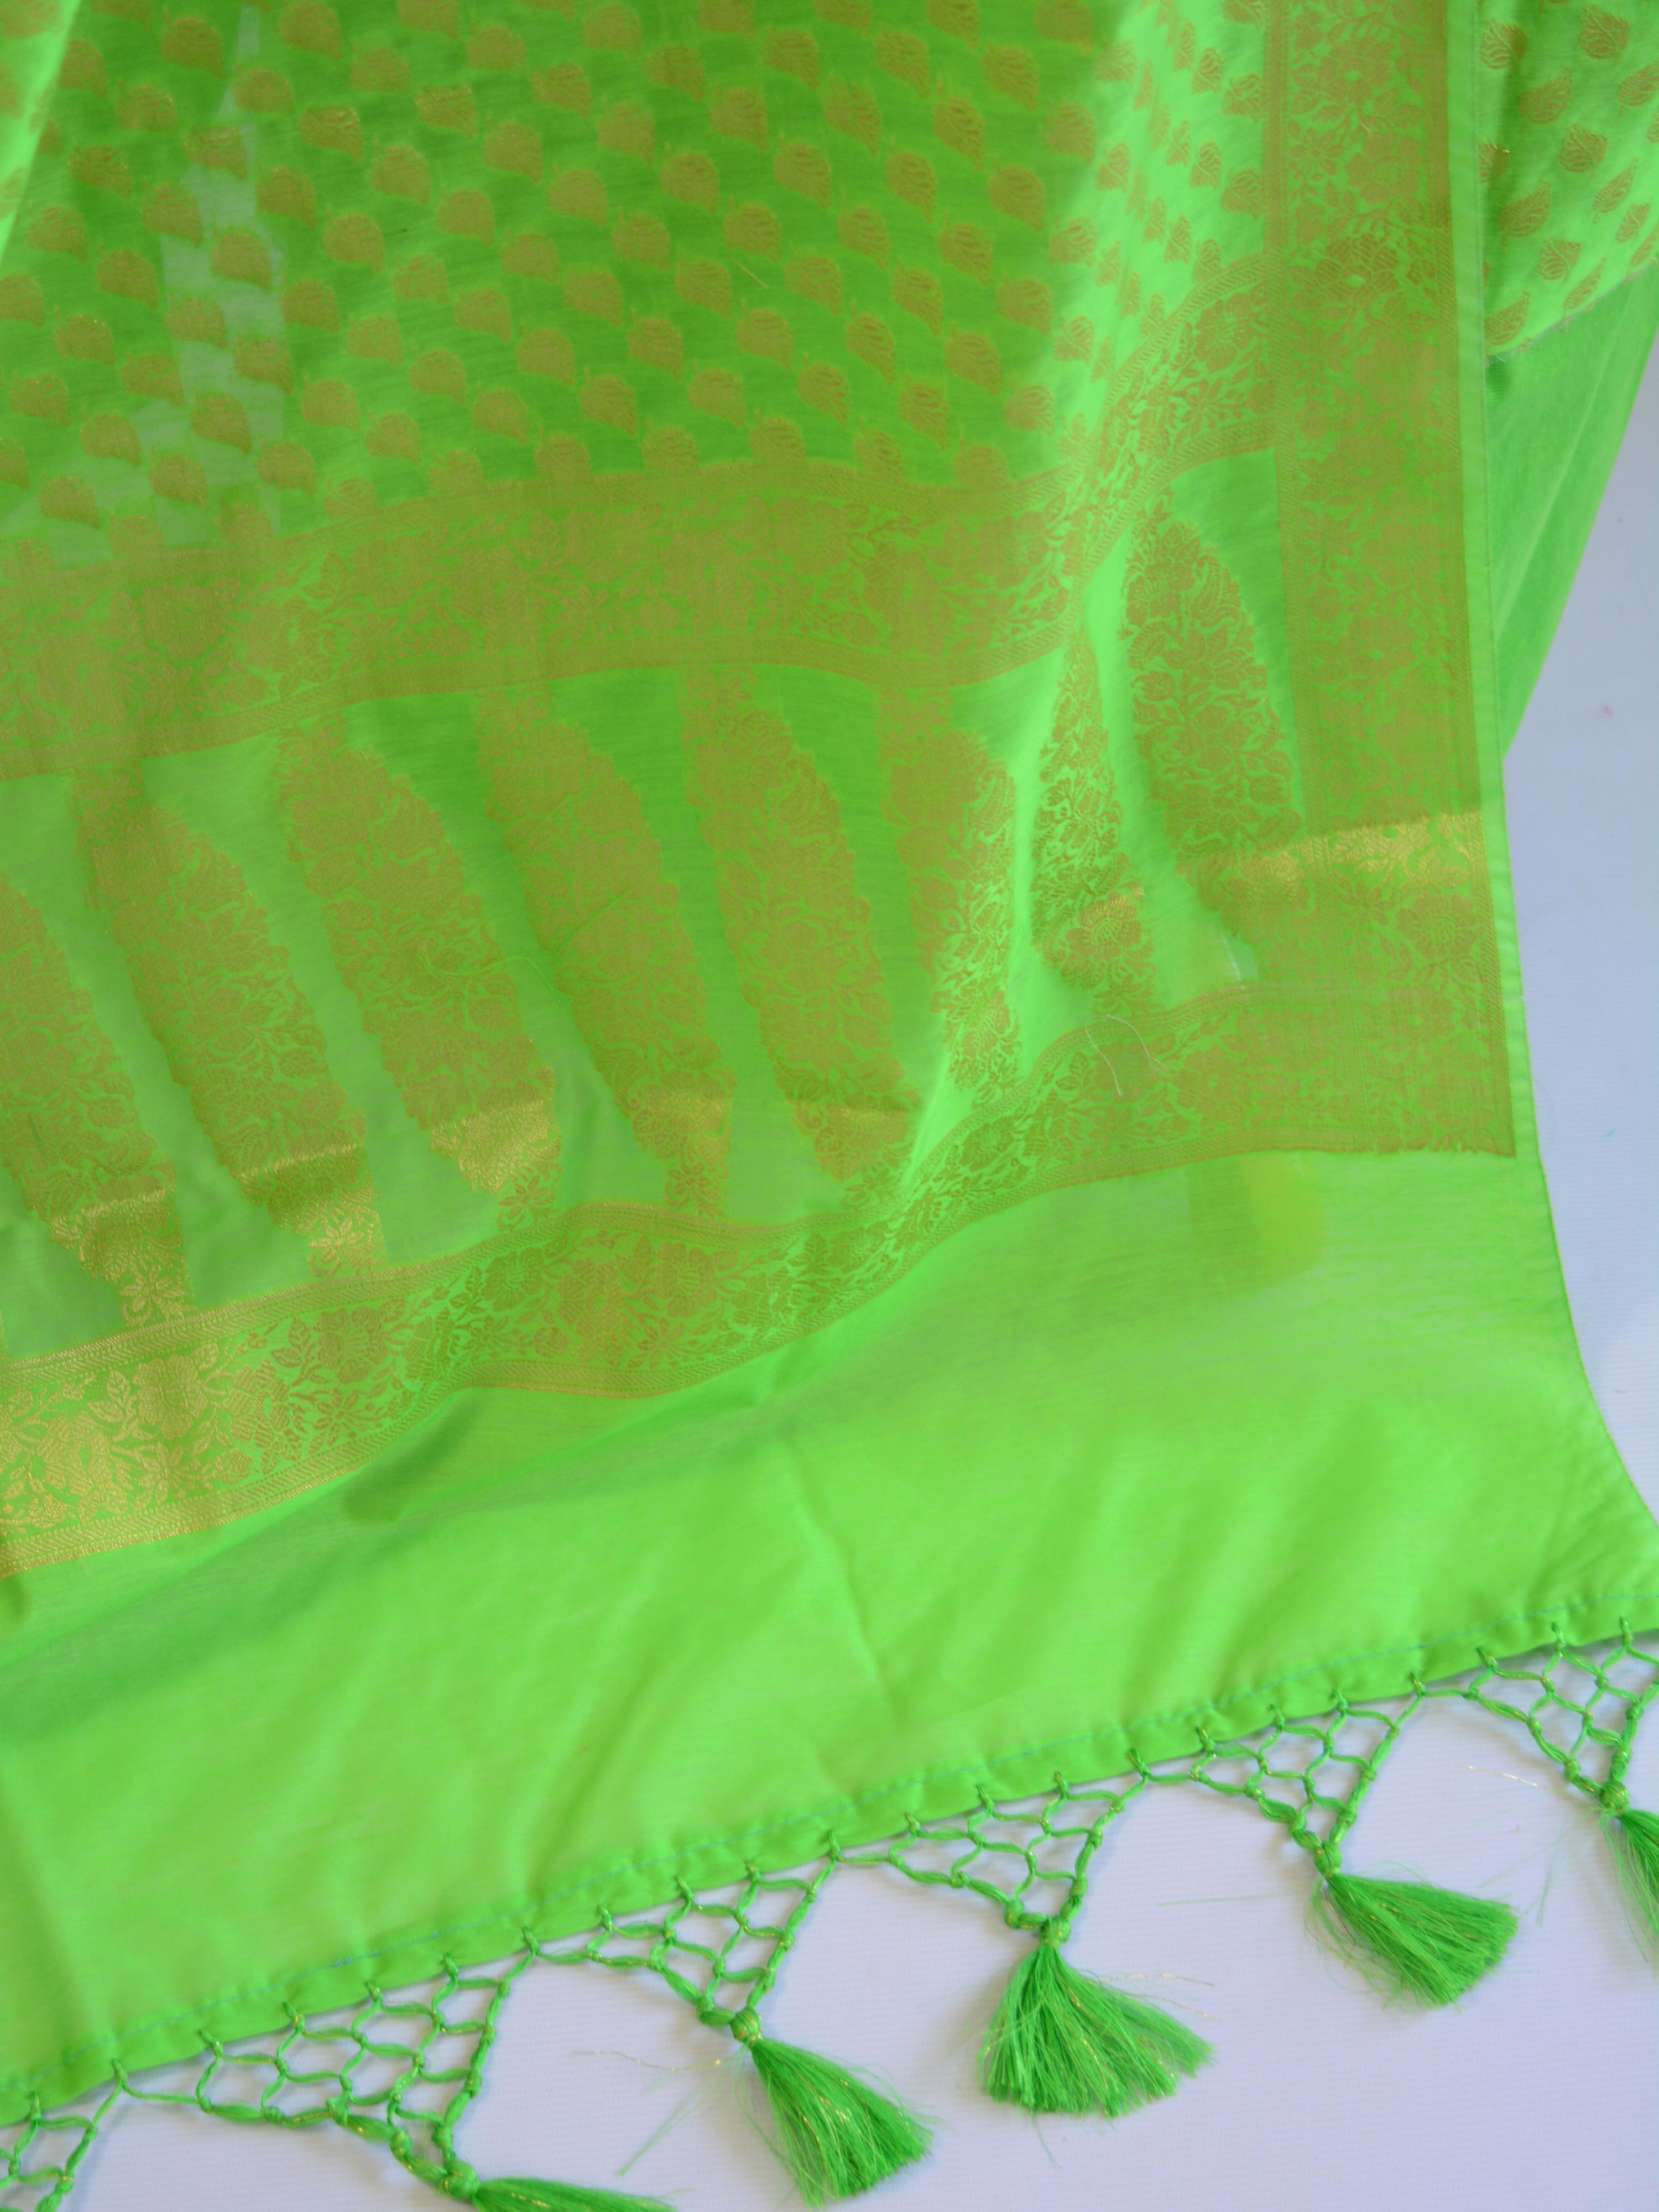 Banarasee Salwar Kameez Cotton Silk Gold Zari Buti Woven Fabric-Neon Green